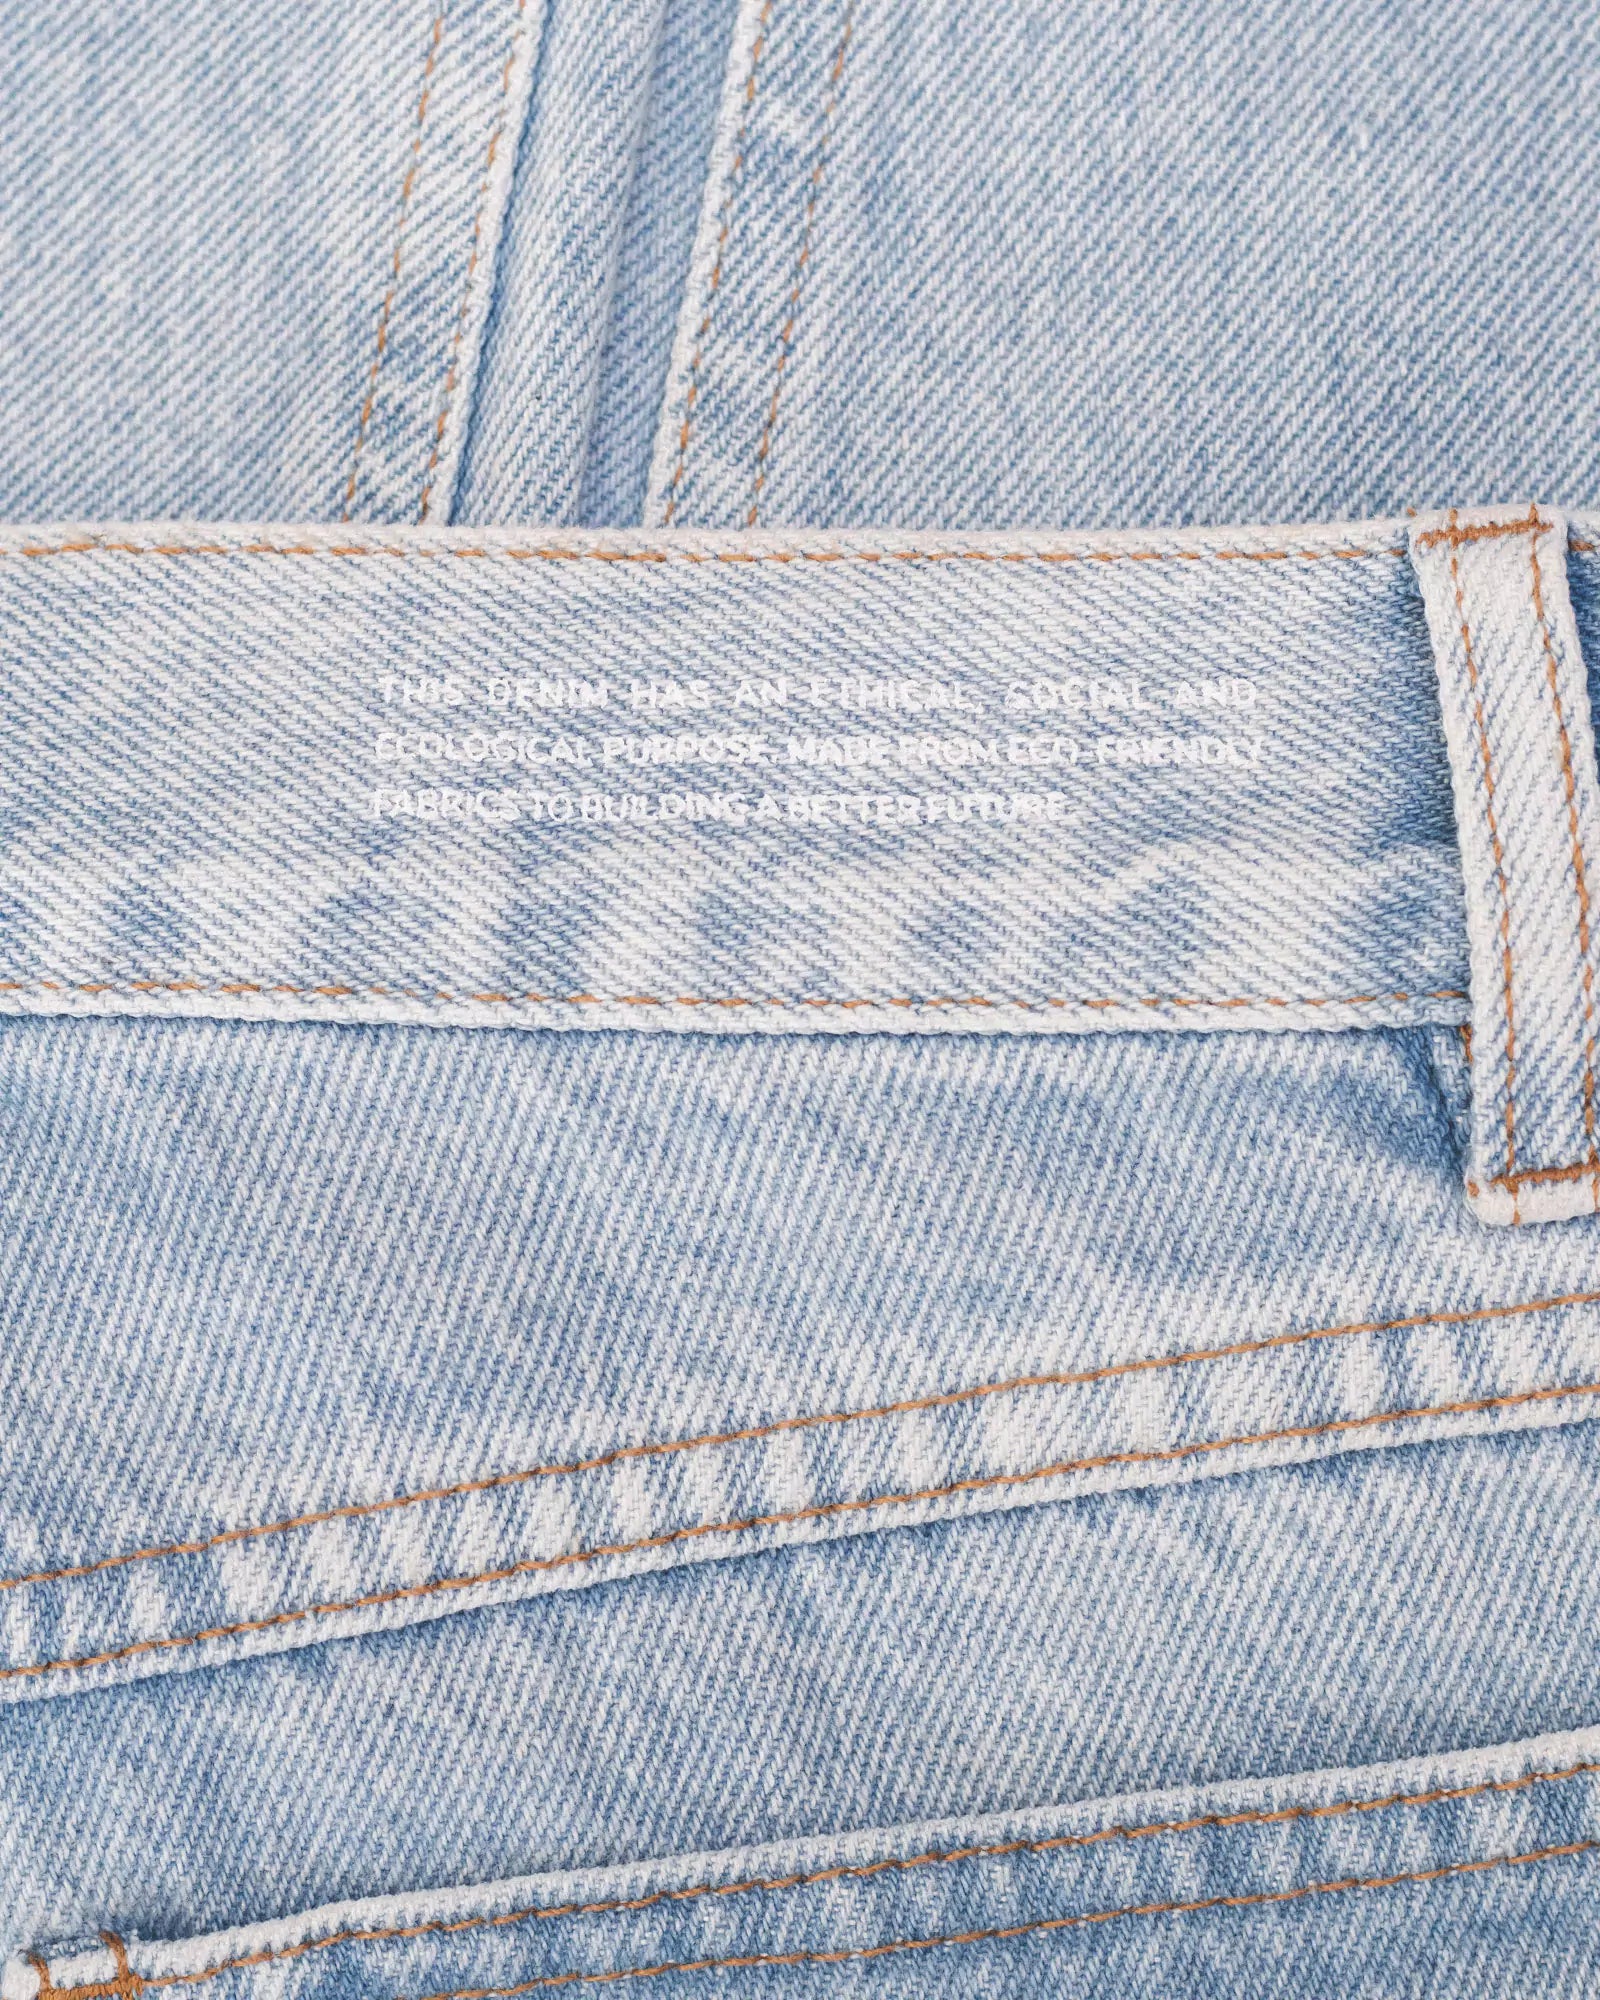 Calça Jeans Wide Leg Azul Claro Eco Denim™. Compre online moda sustentável e atemporal na Minimadeia. Roupas femininas estilosas, básicas e sustentáveis. Foto produto destaque